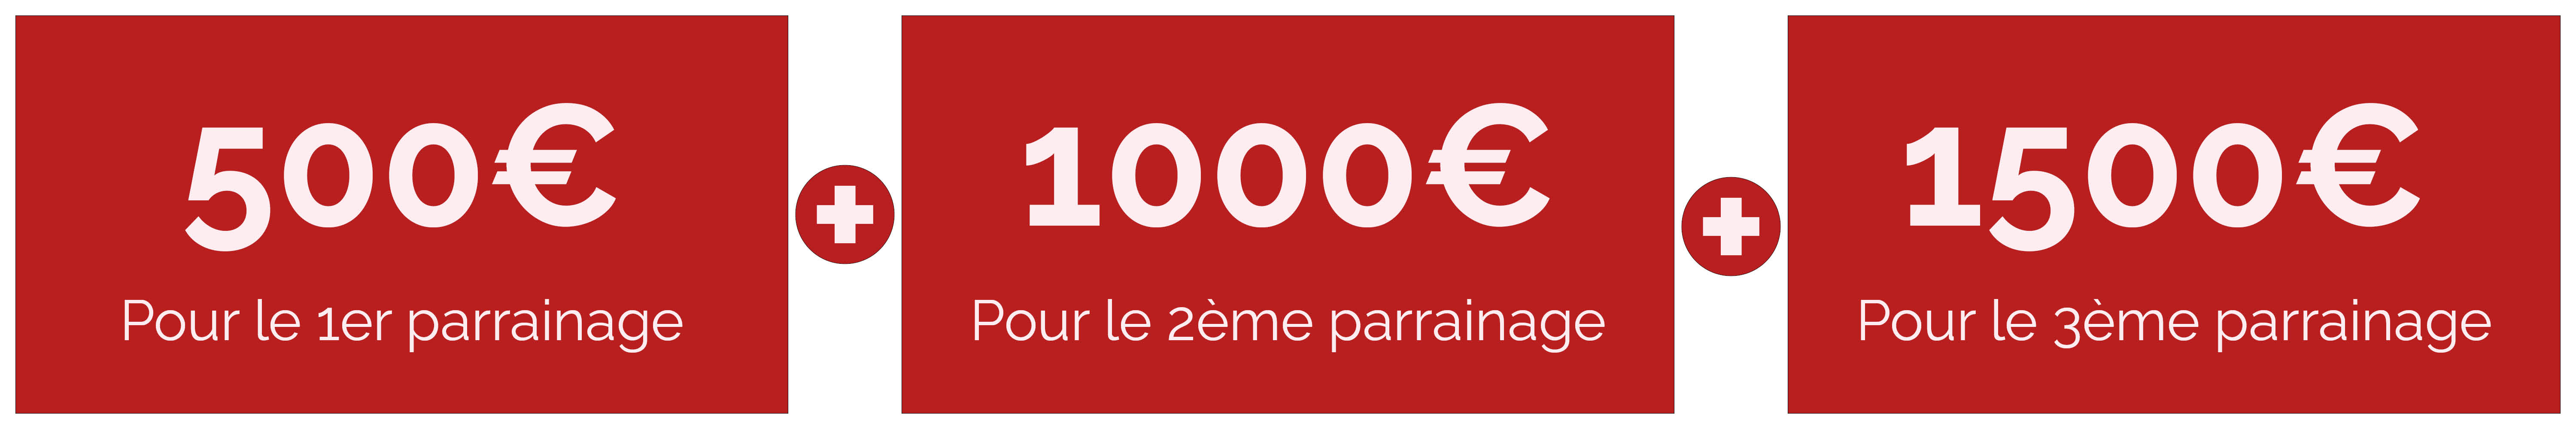 Parrainage offre PIF 3000 euros